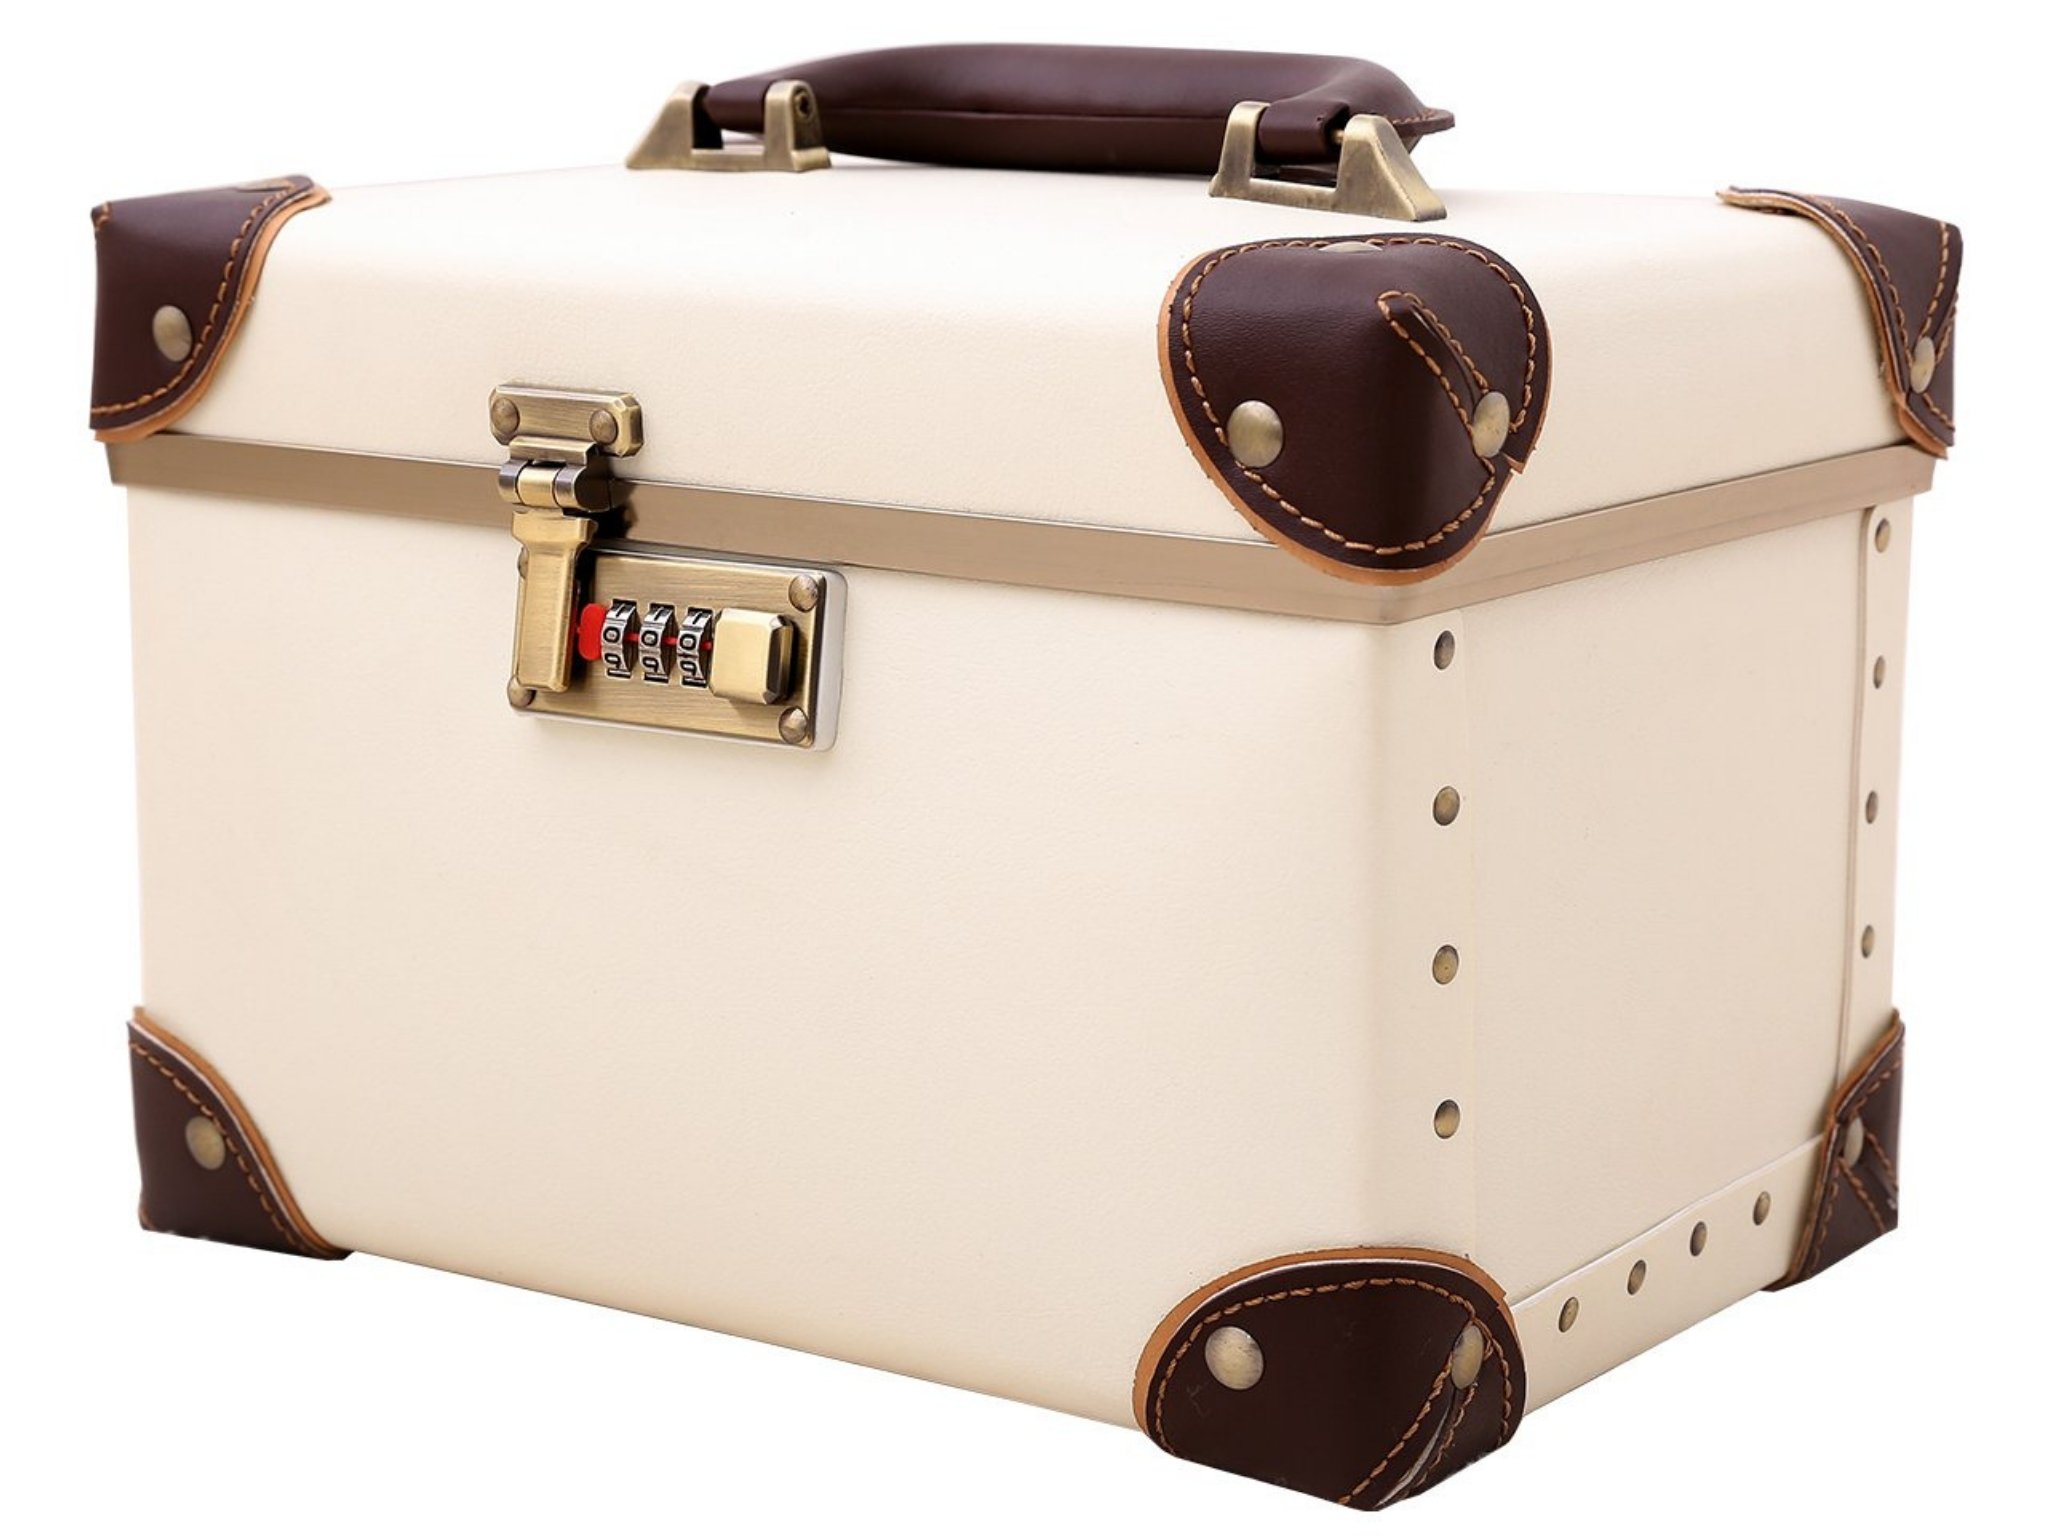 55pcs/lot Vintage Old Fashioned Style Luggage Suitcase Travel W3U8 Gift Sti I1N2 